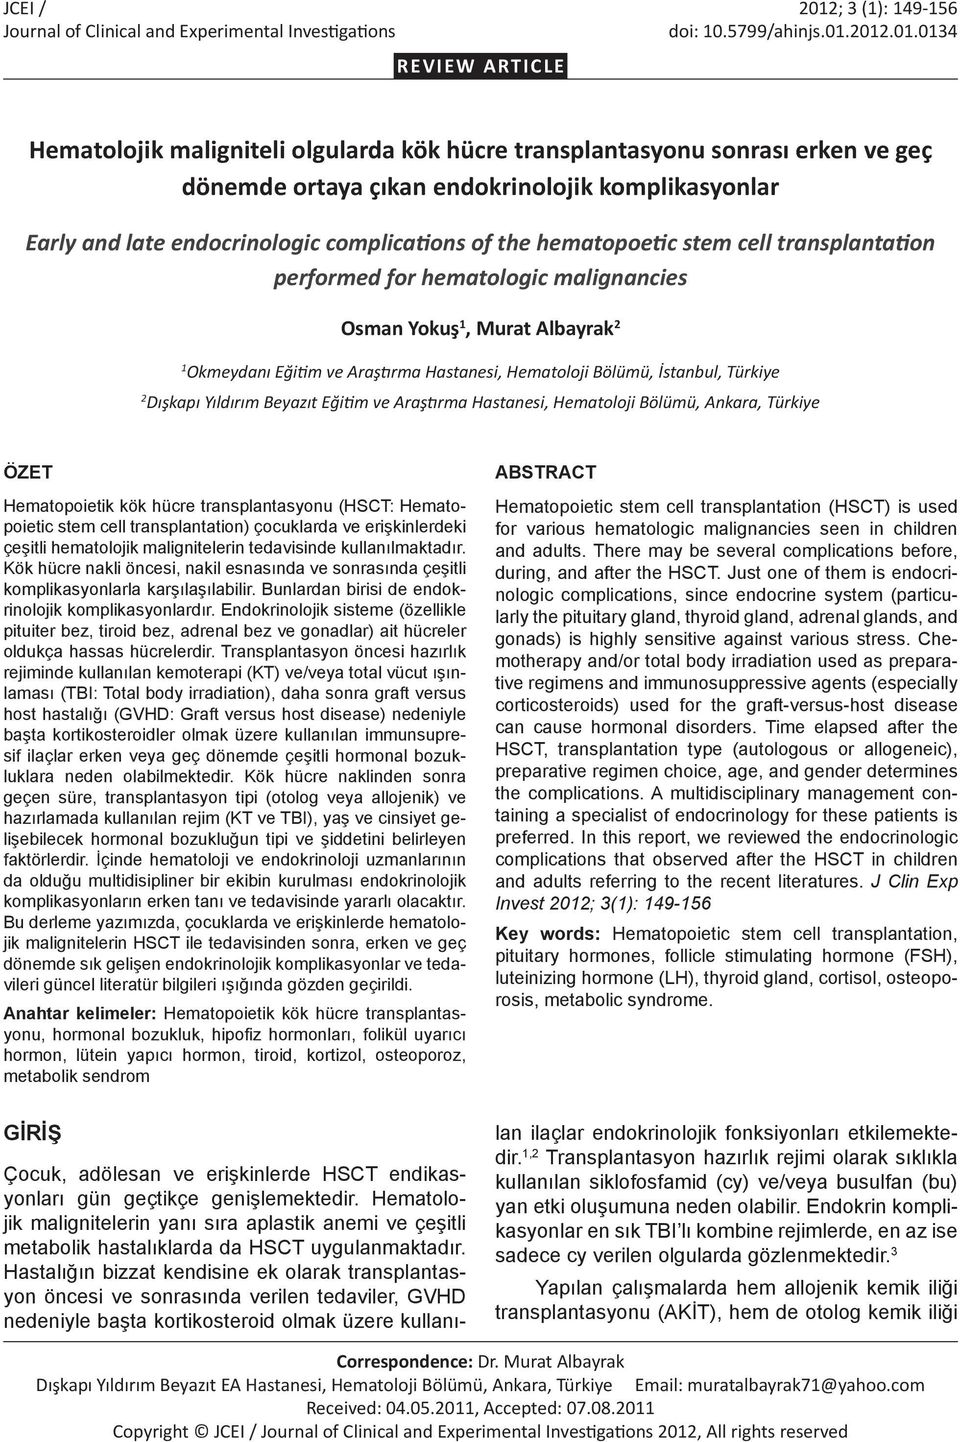 2012.01.0134 REVIEW ARTICLE Hematolojik maligniteli olgularda kök hücre transplantasyonu sonrası erken ve geç dönemde ortaya çıkan endokrinolojik komplikasyonlar Early and late endocrinologic